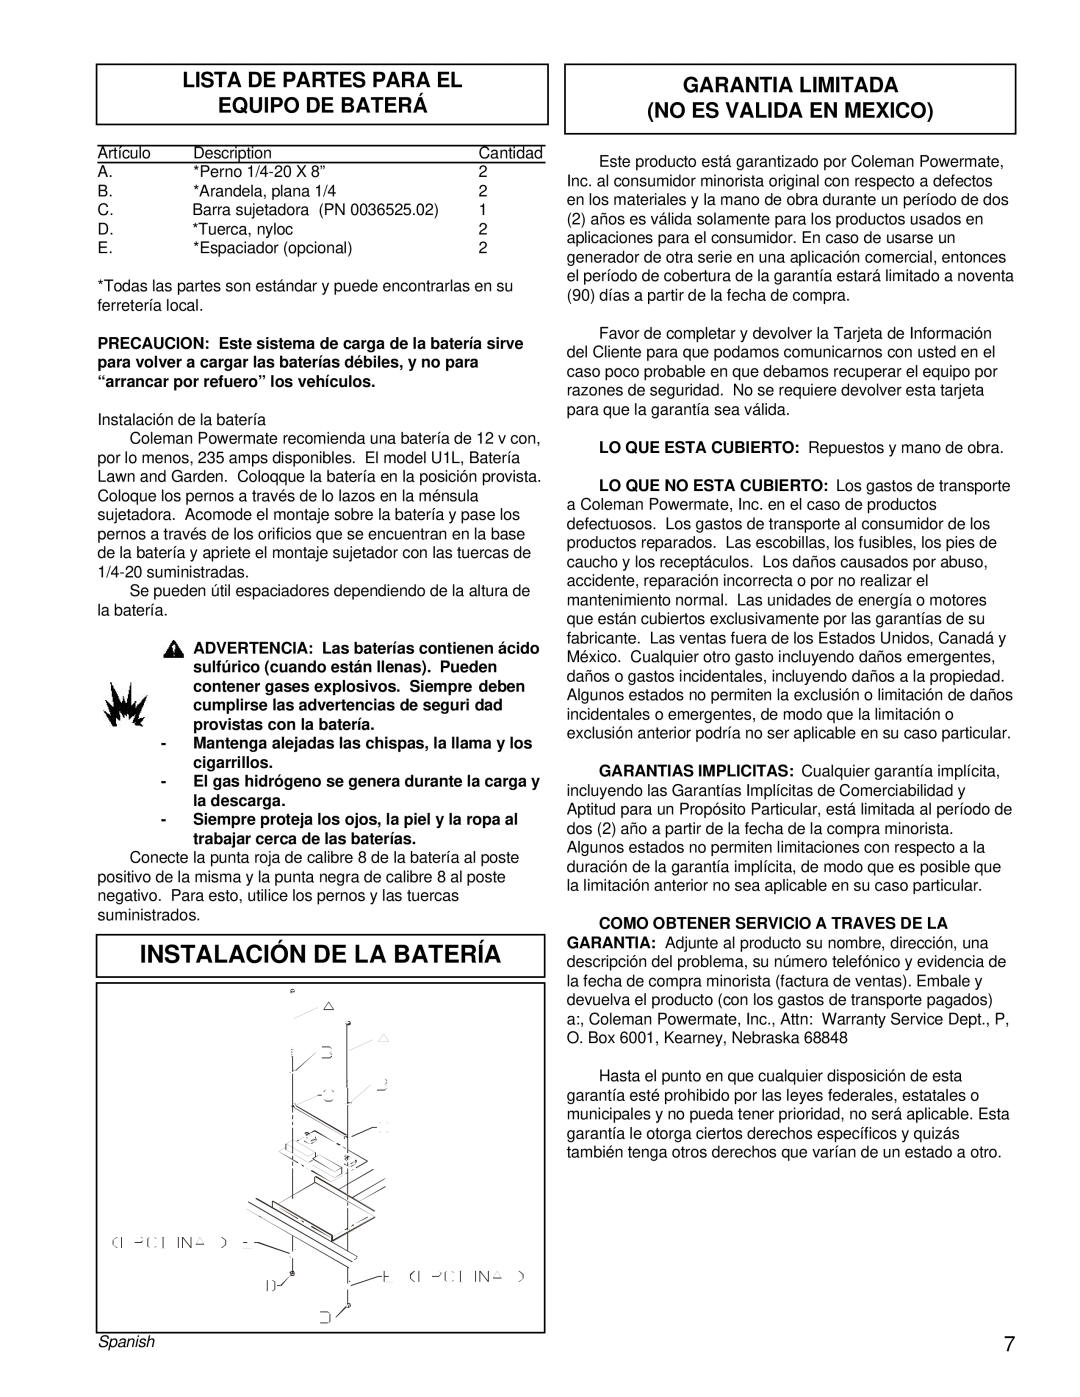 Powermate PC0505622.17 manual Instalación De La Batería, Lista De Partes Para El Equipo De Baterá, Spanish 